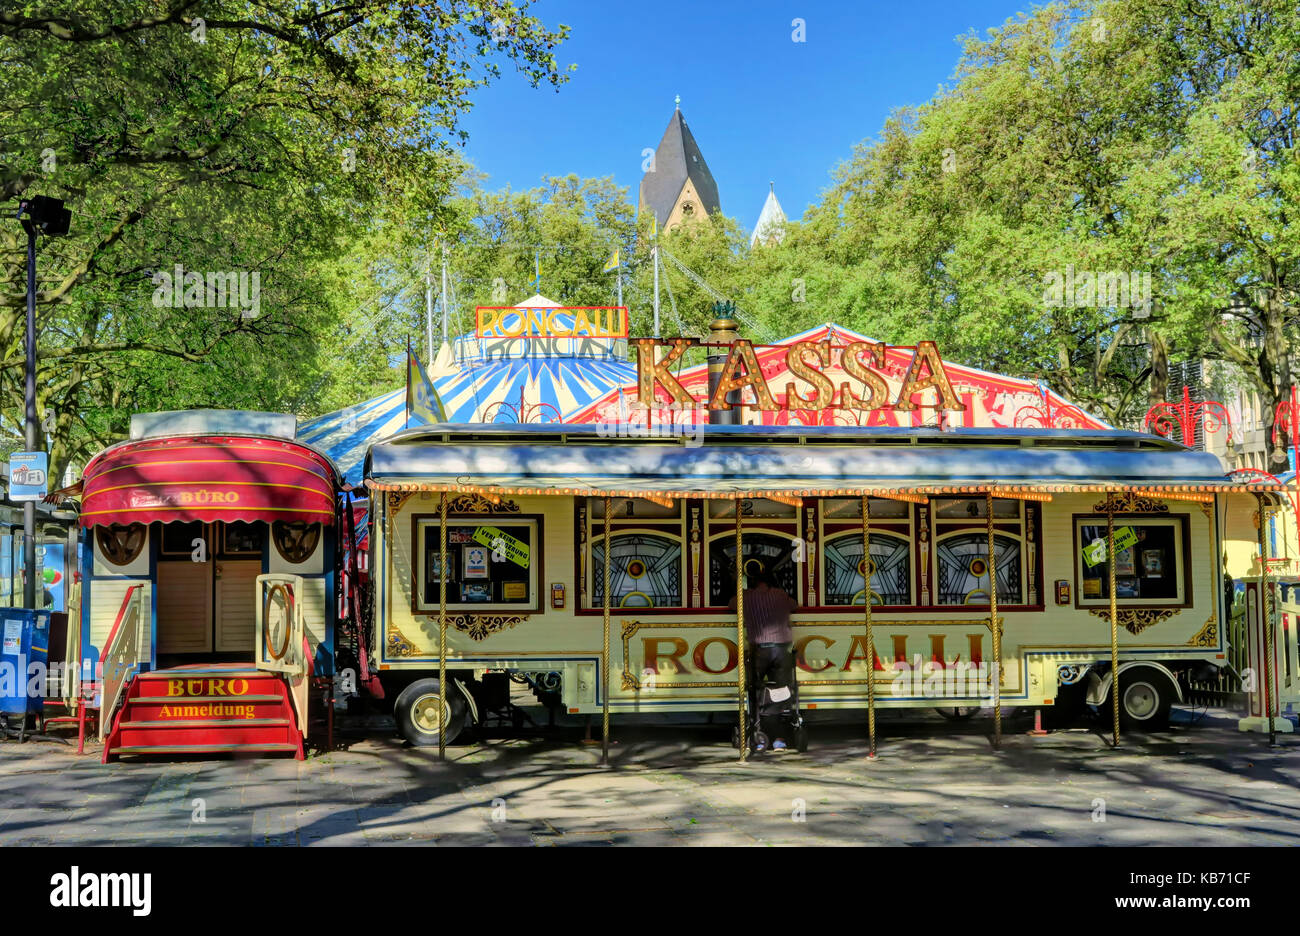 Colonia, Germania - 8 maggio : roncalli circus in un parco nel maggio 8, 2016. Foto Stock